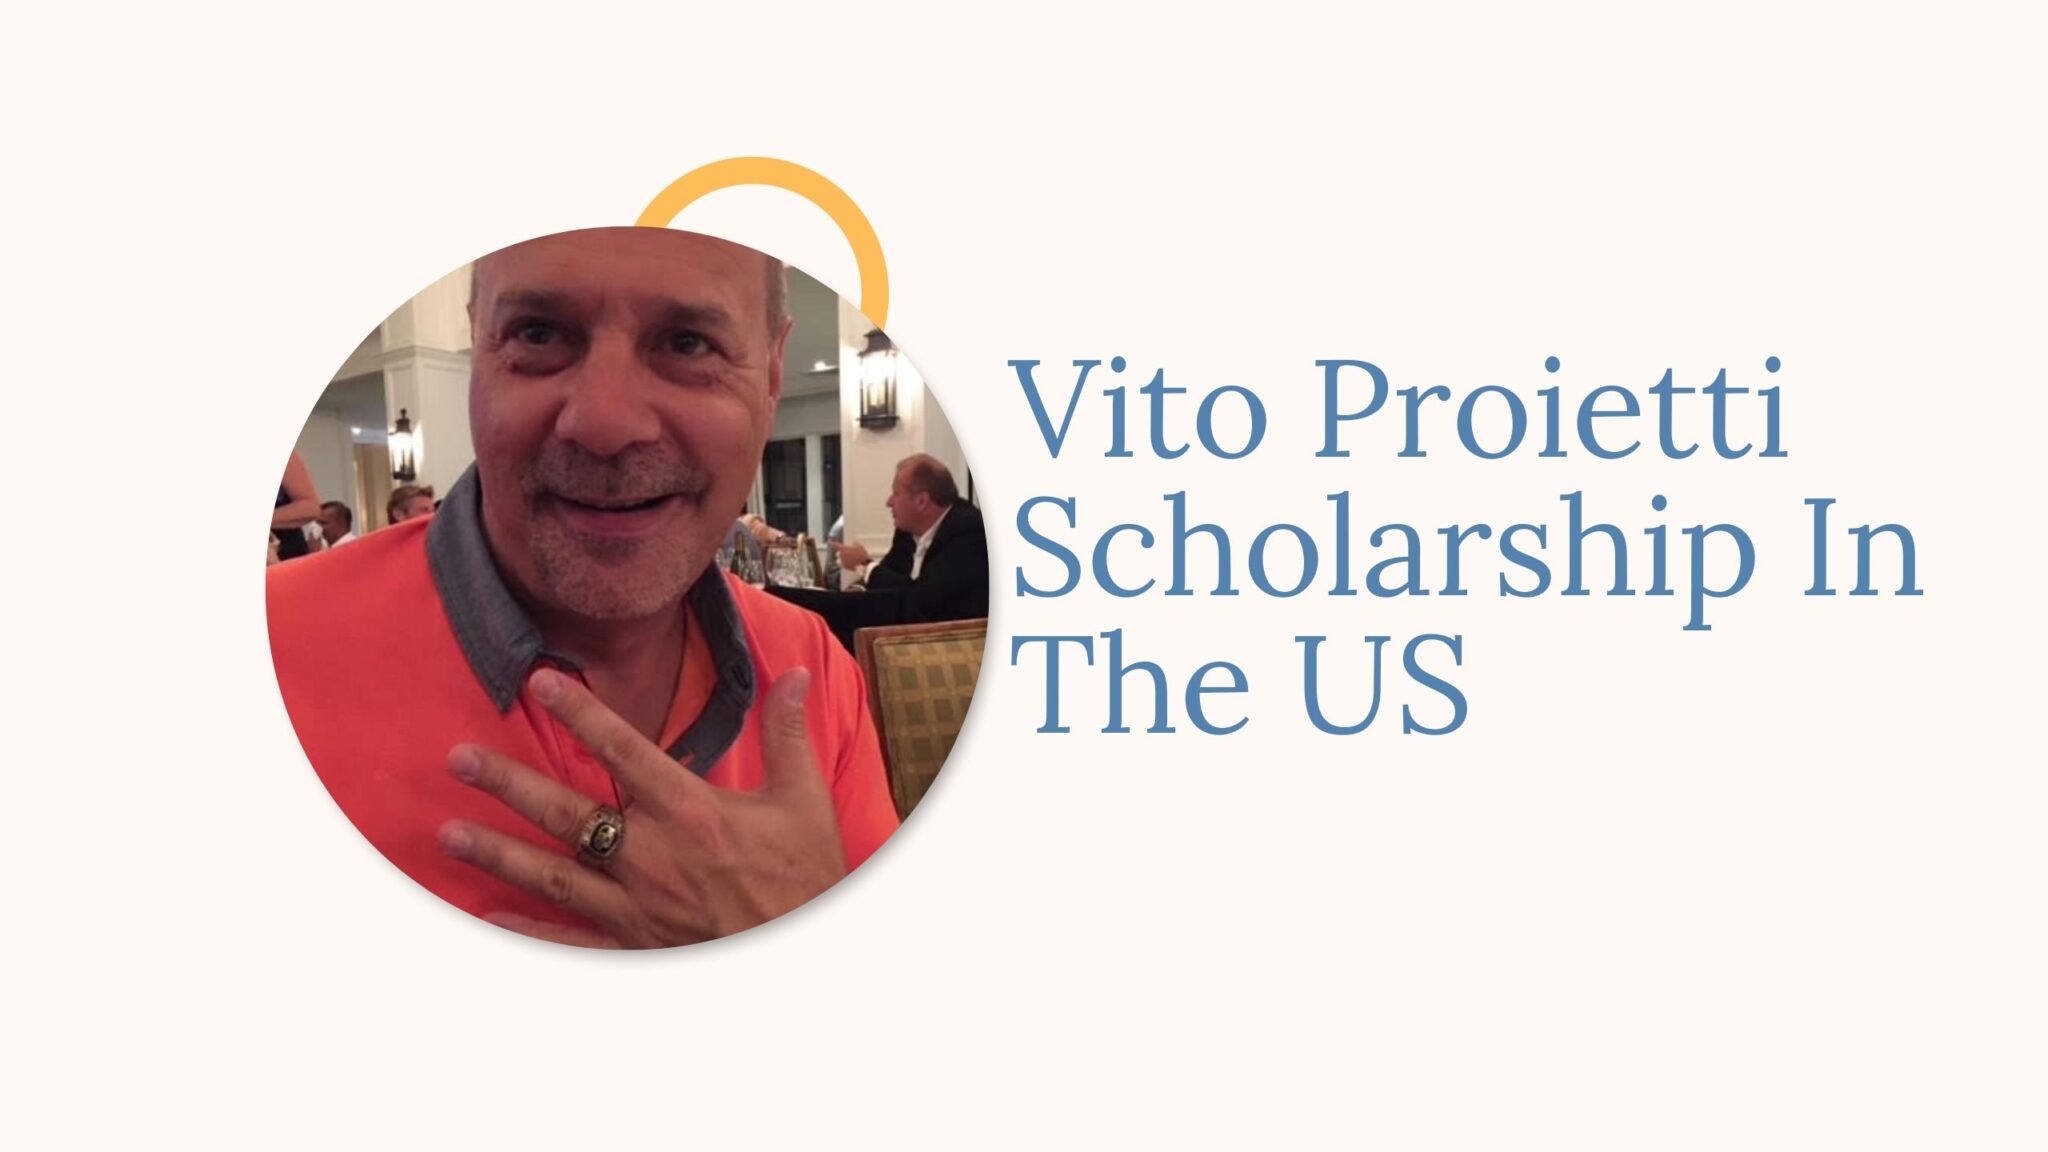 Vito Proietti Scholarship In The US